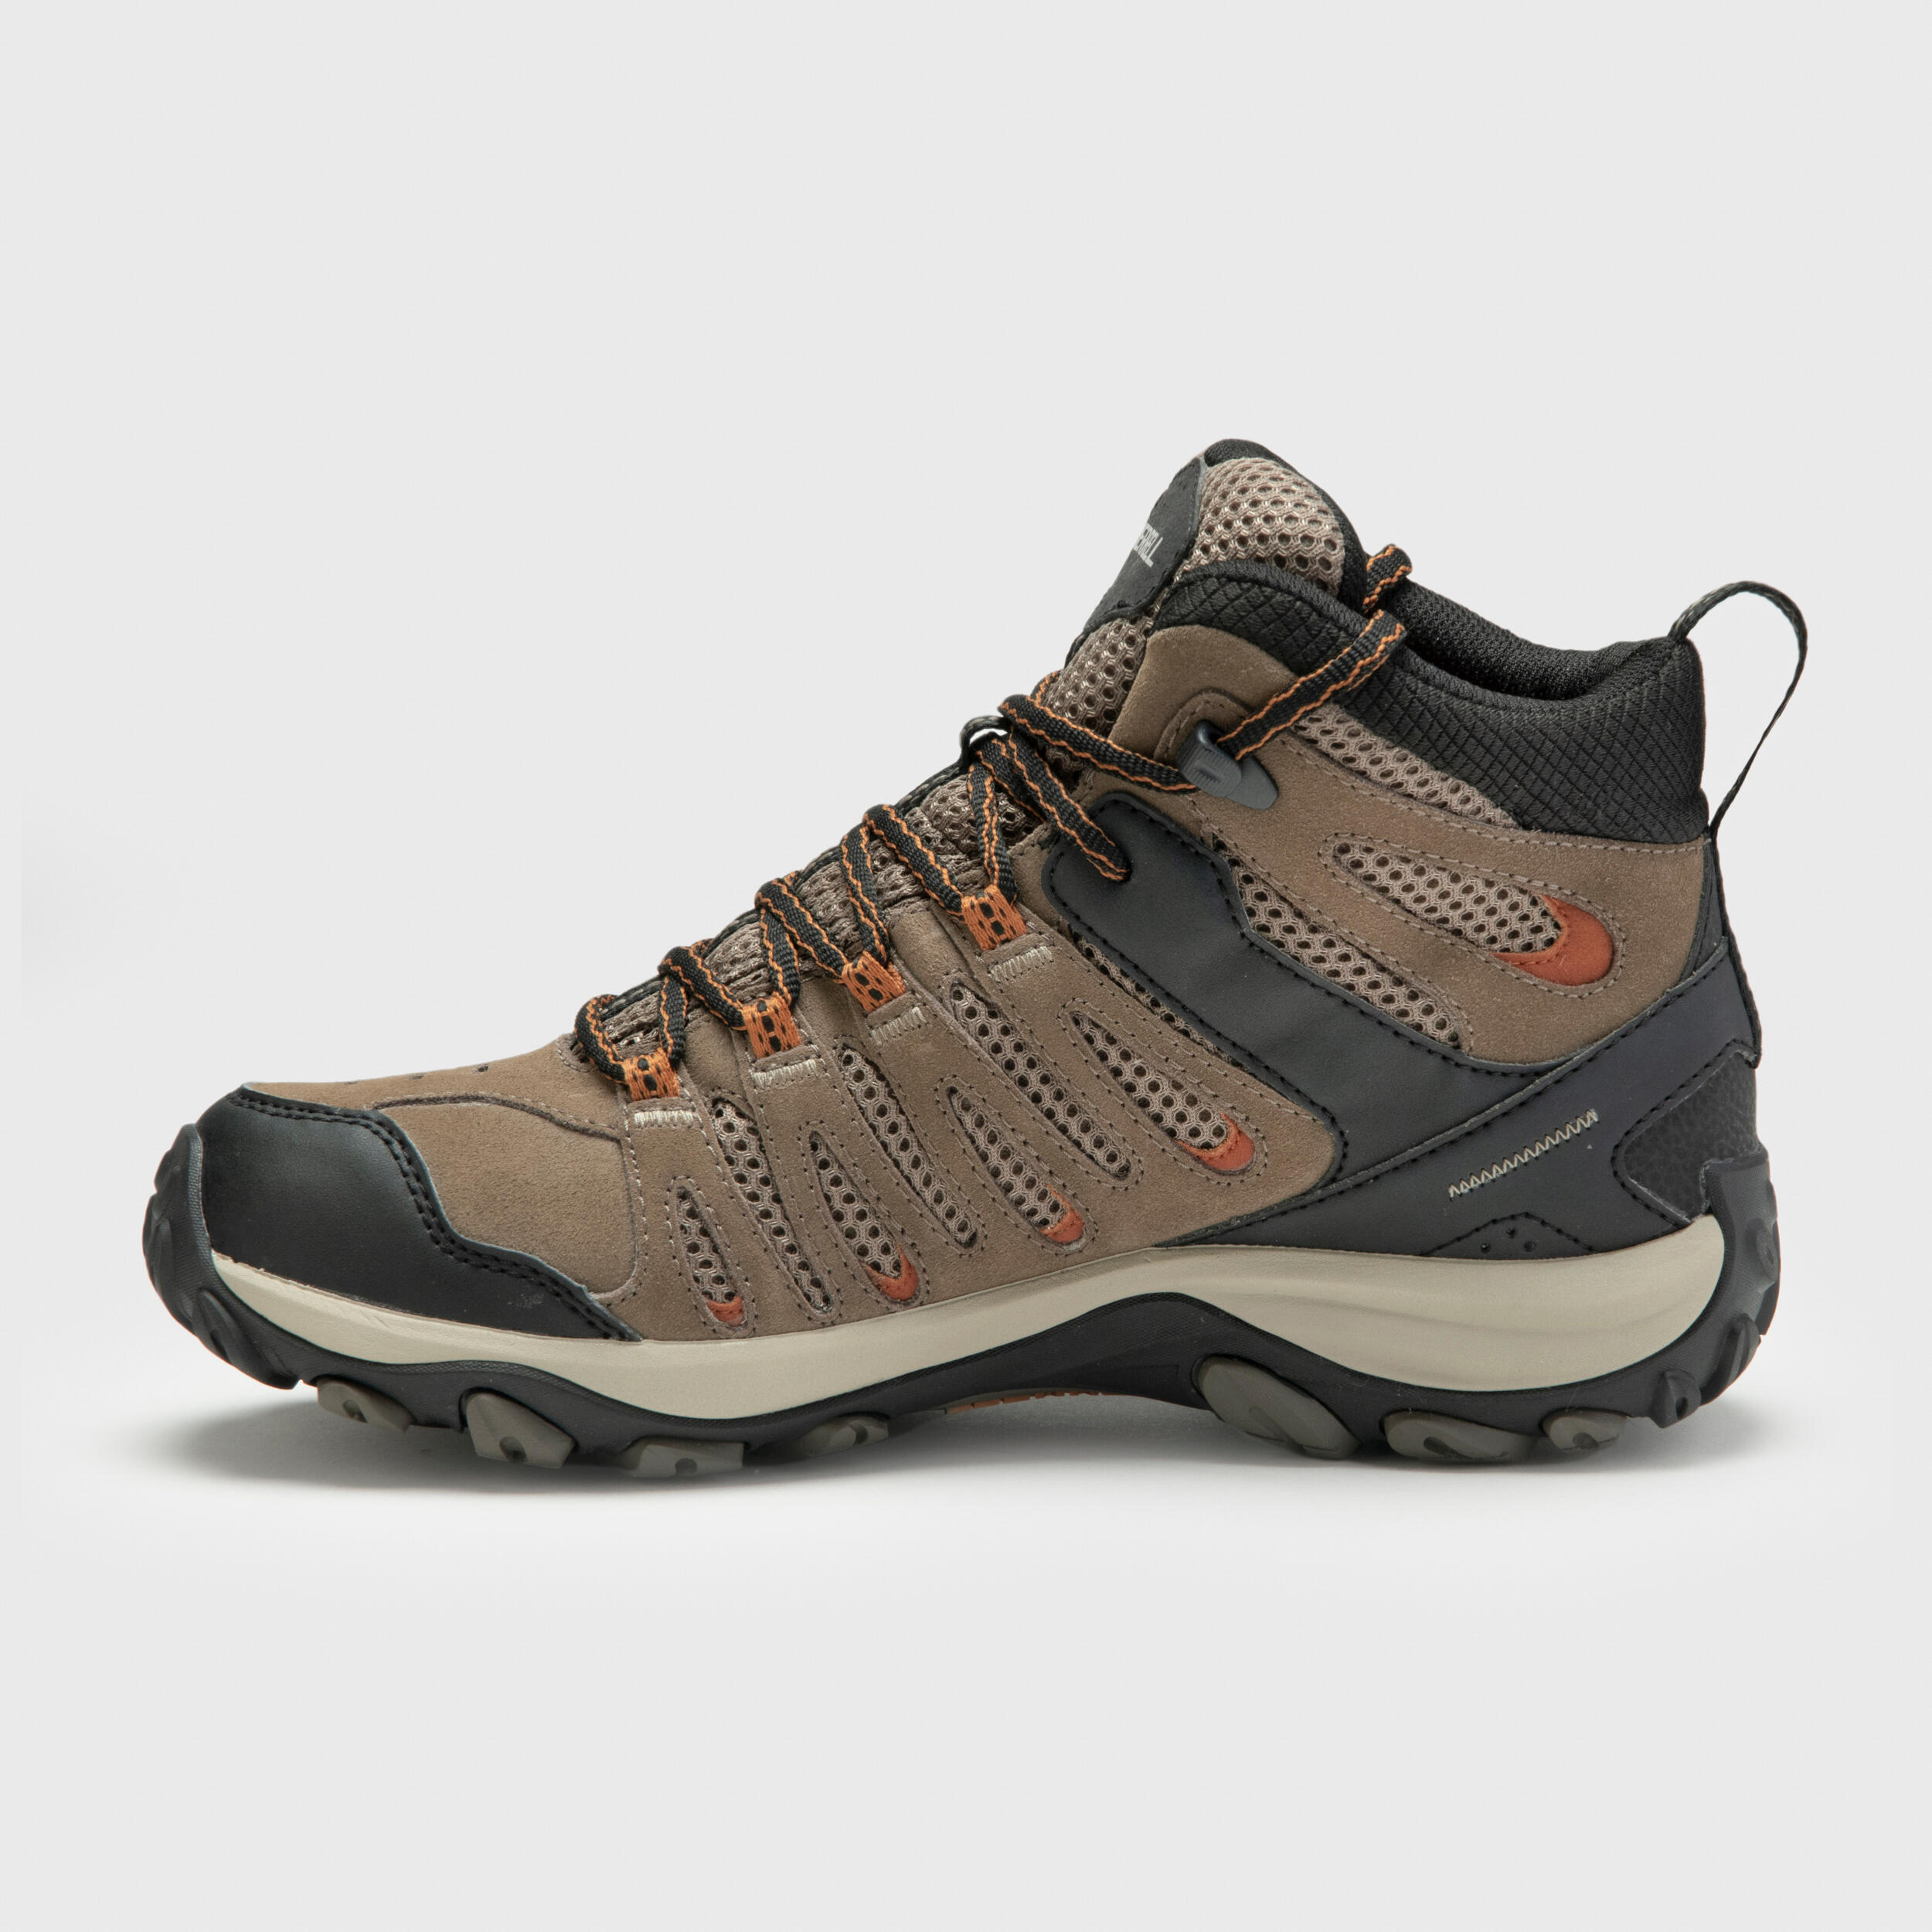 Men's Hiking shoes - MERRELL CROSSLANDER MID WATERPROOF  2/5